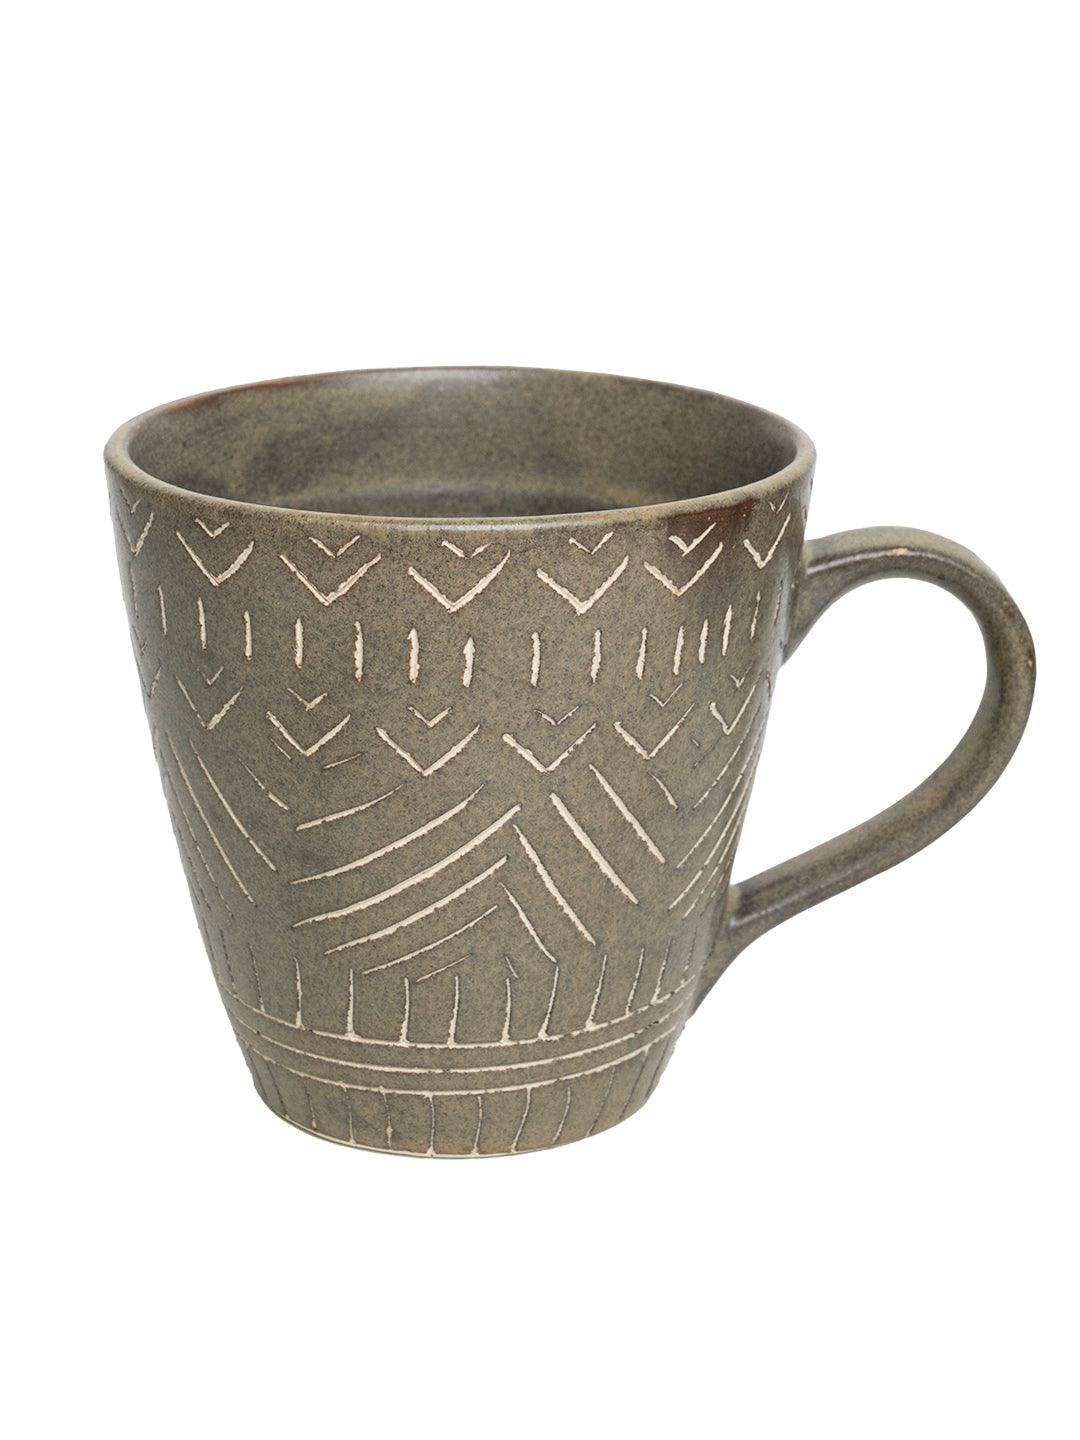 VON CASA Ceramic Coffee Mug - 320 Ml, Brown & Engrabed - MARKET 99